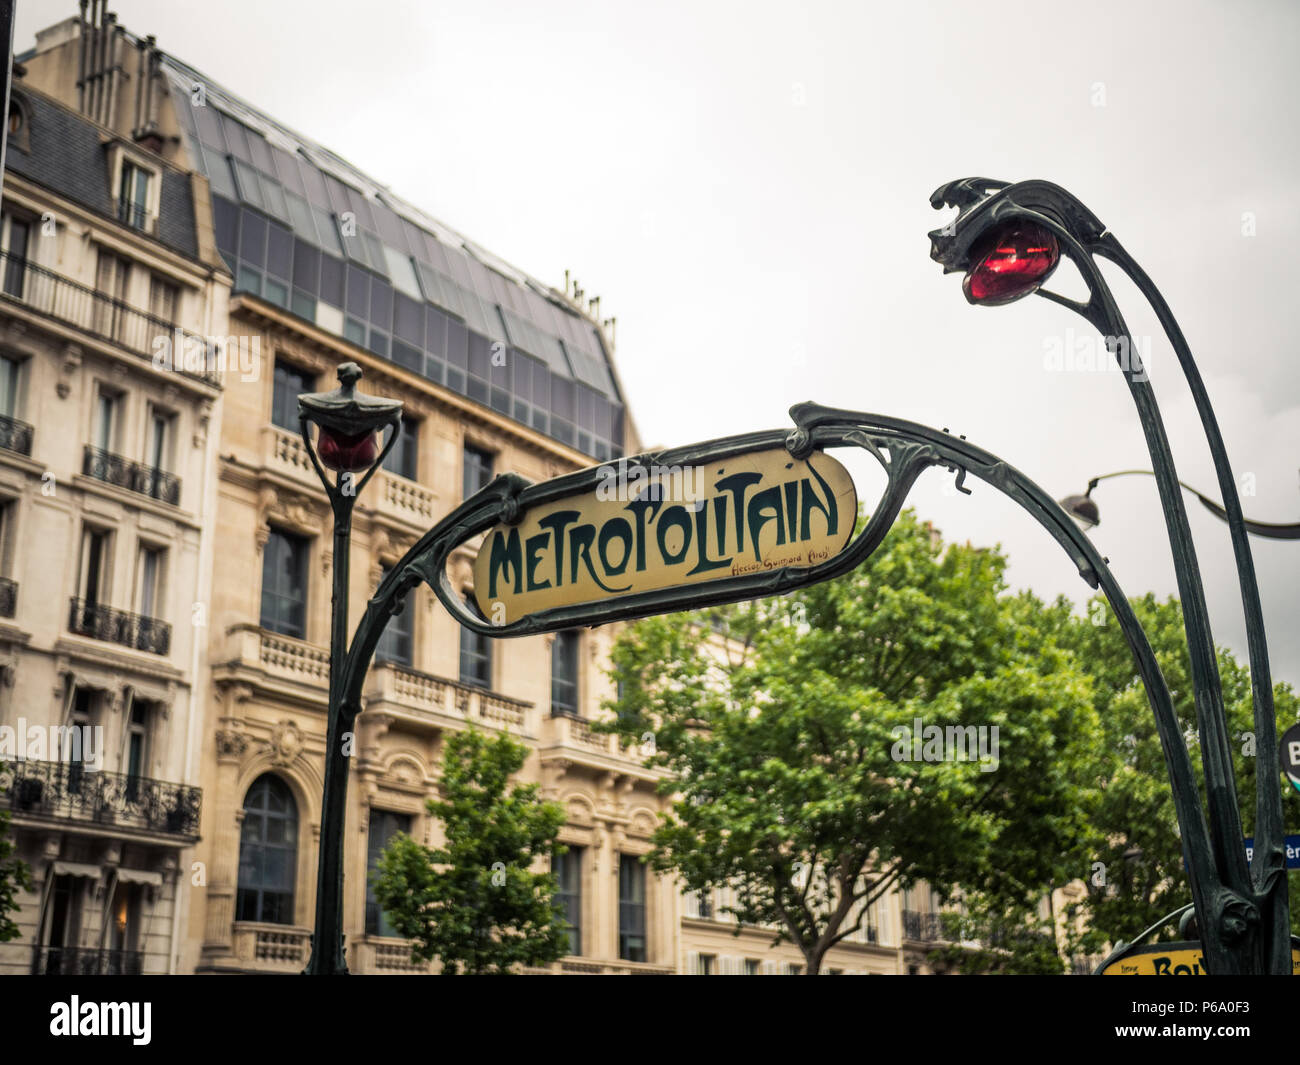 Métro Art Nouveau signe 'Metropolitain' conçu par Hector Guimard qui marque l'entrée d'une station de métro à Paris, France. Banque D'Images